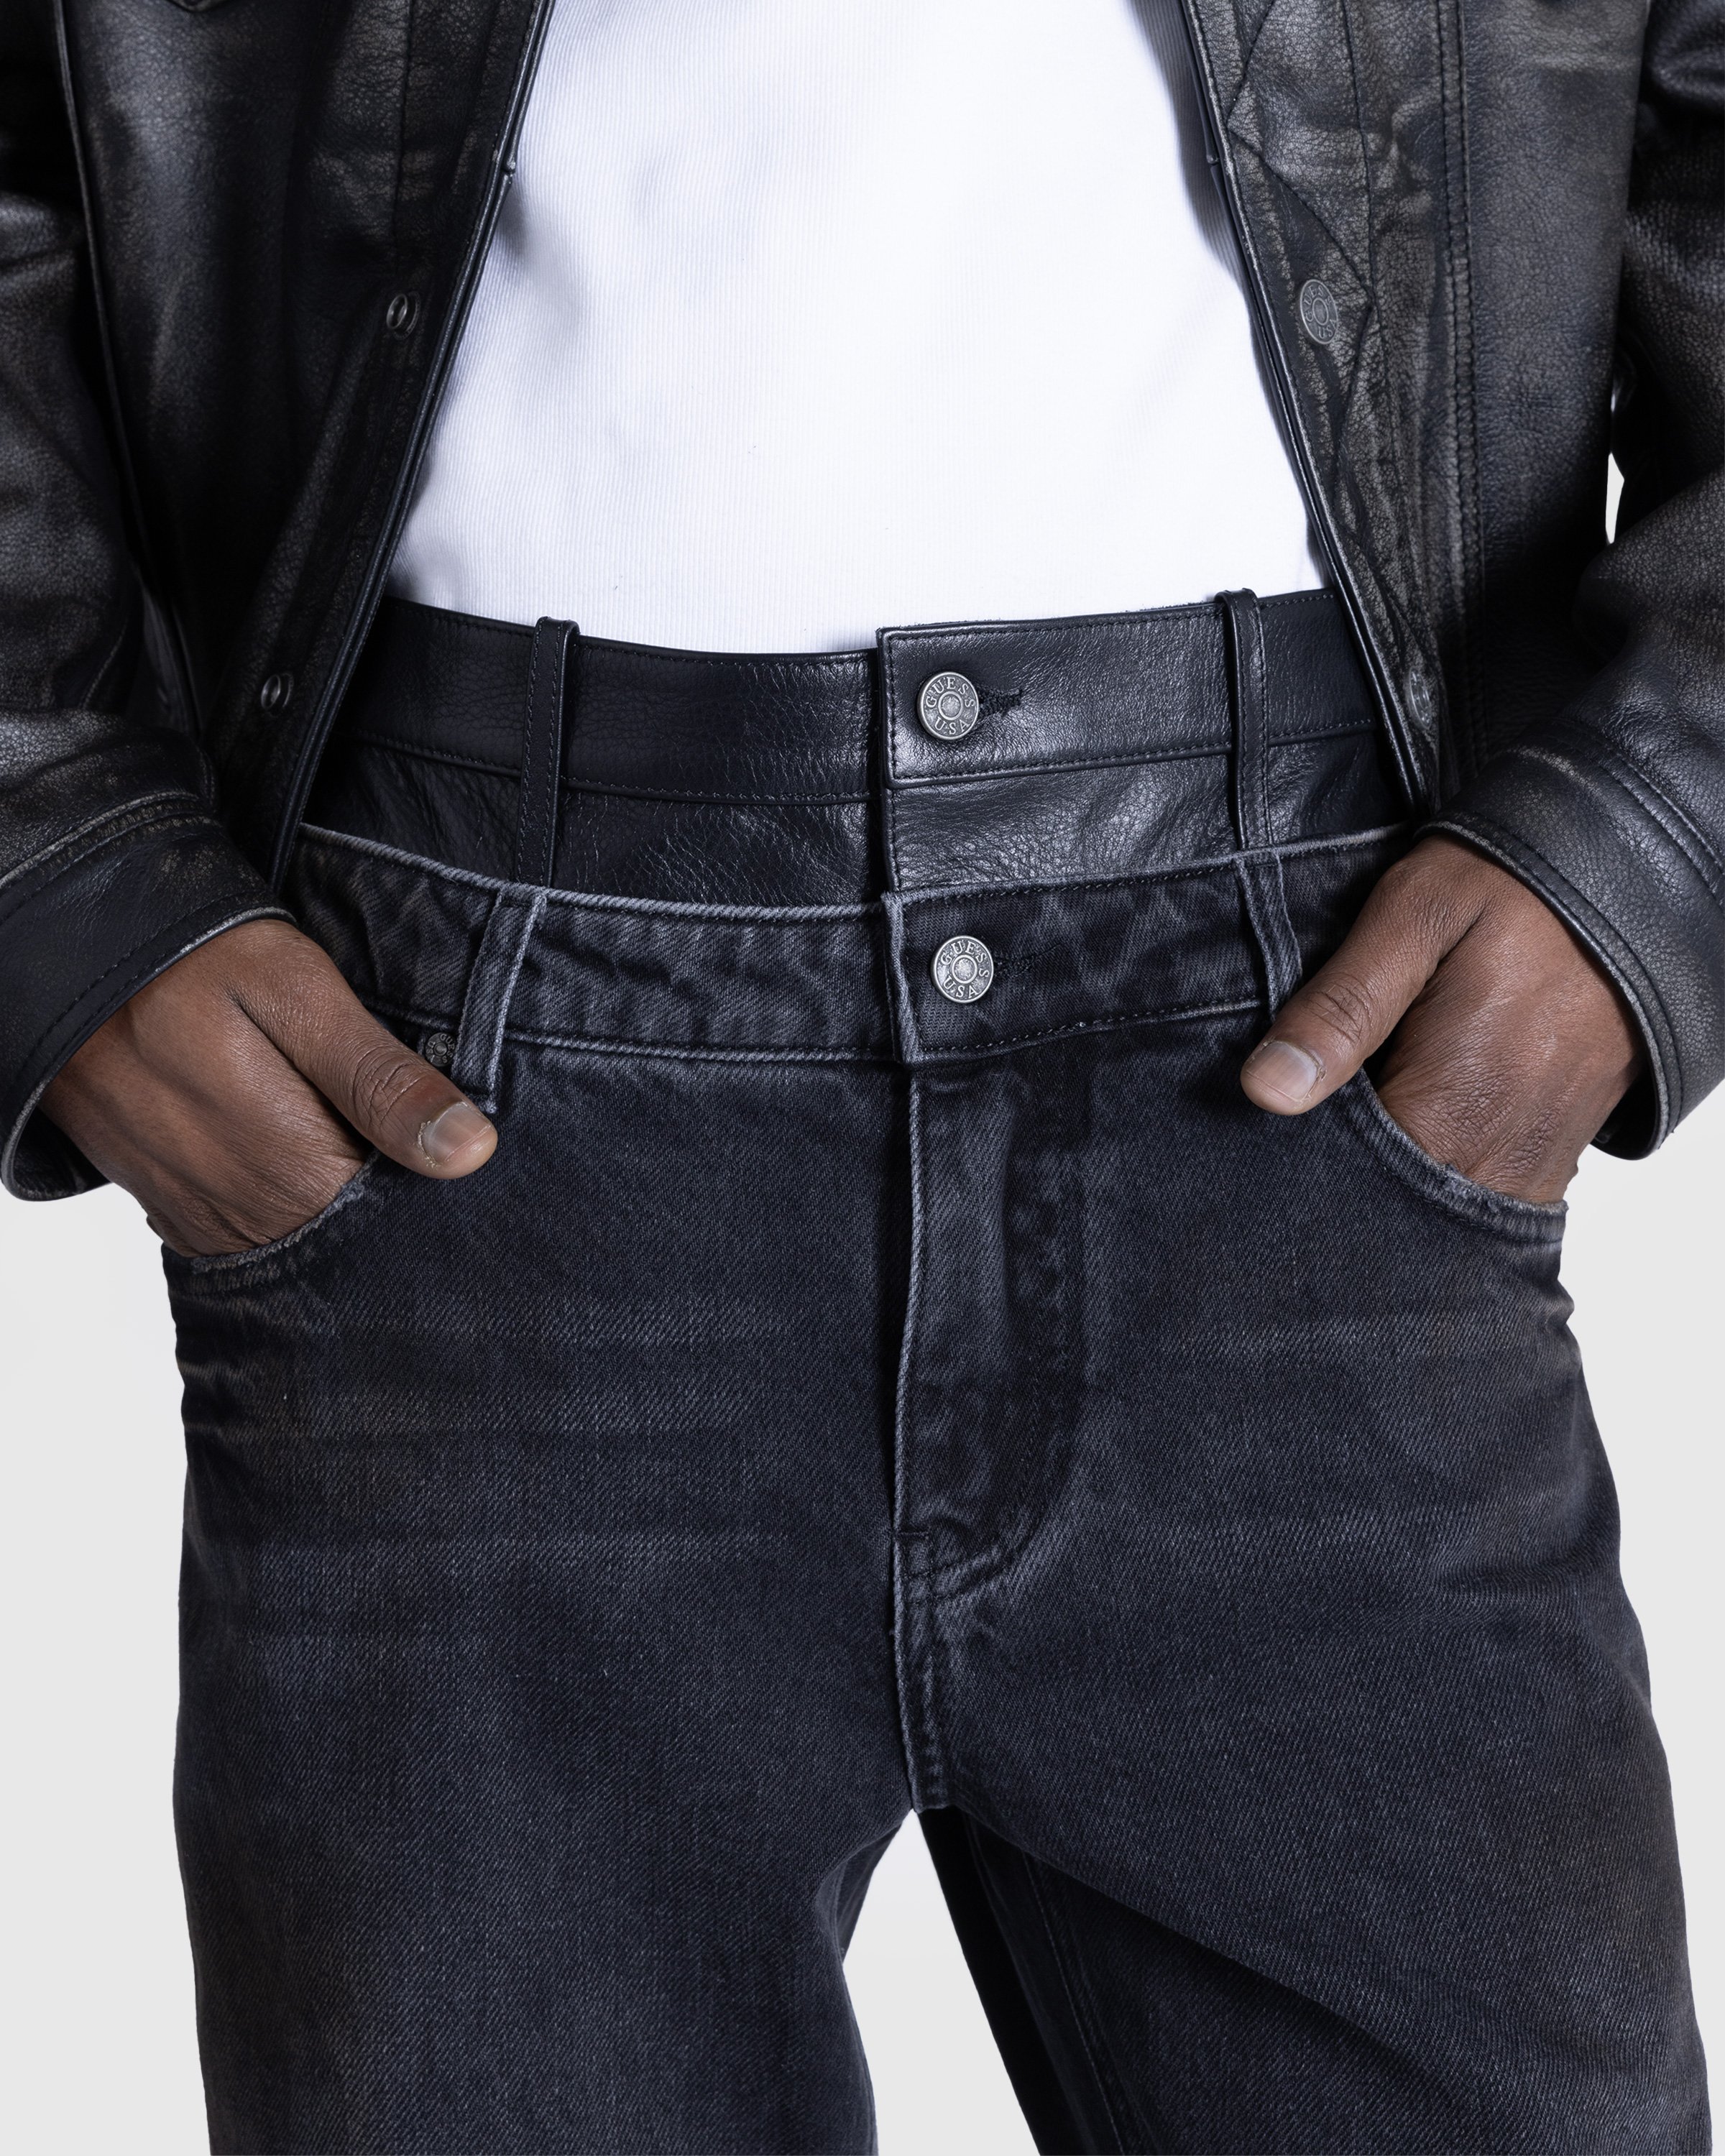 Guess USA - Gusa Contrast Flare Pant Gusa Aged Black Wash - Clothing - Black - Image 5